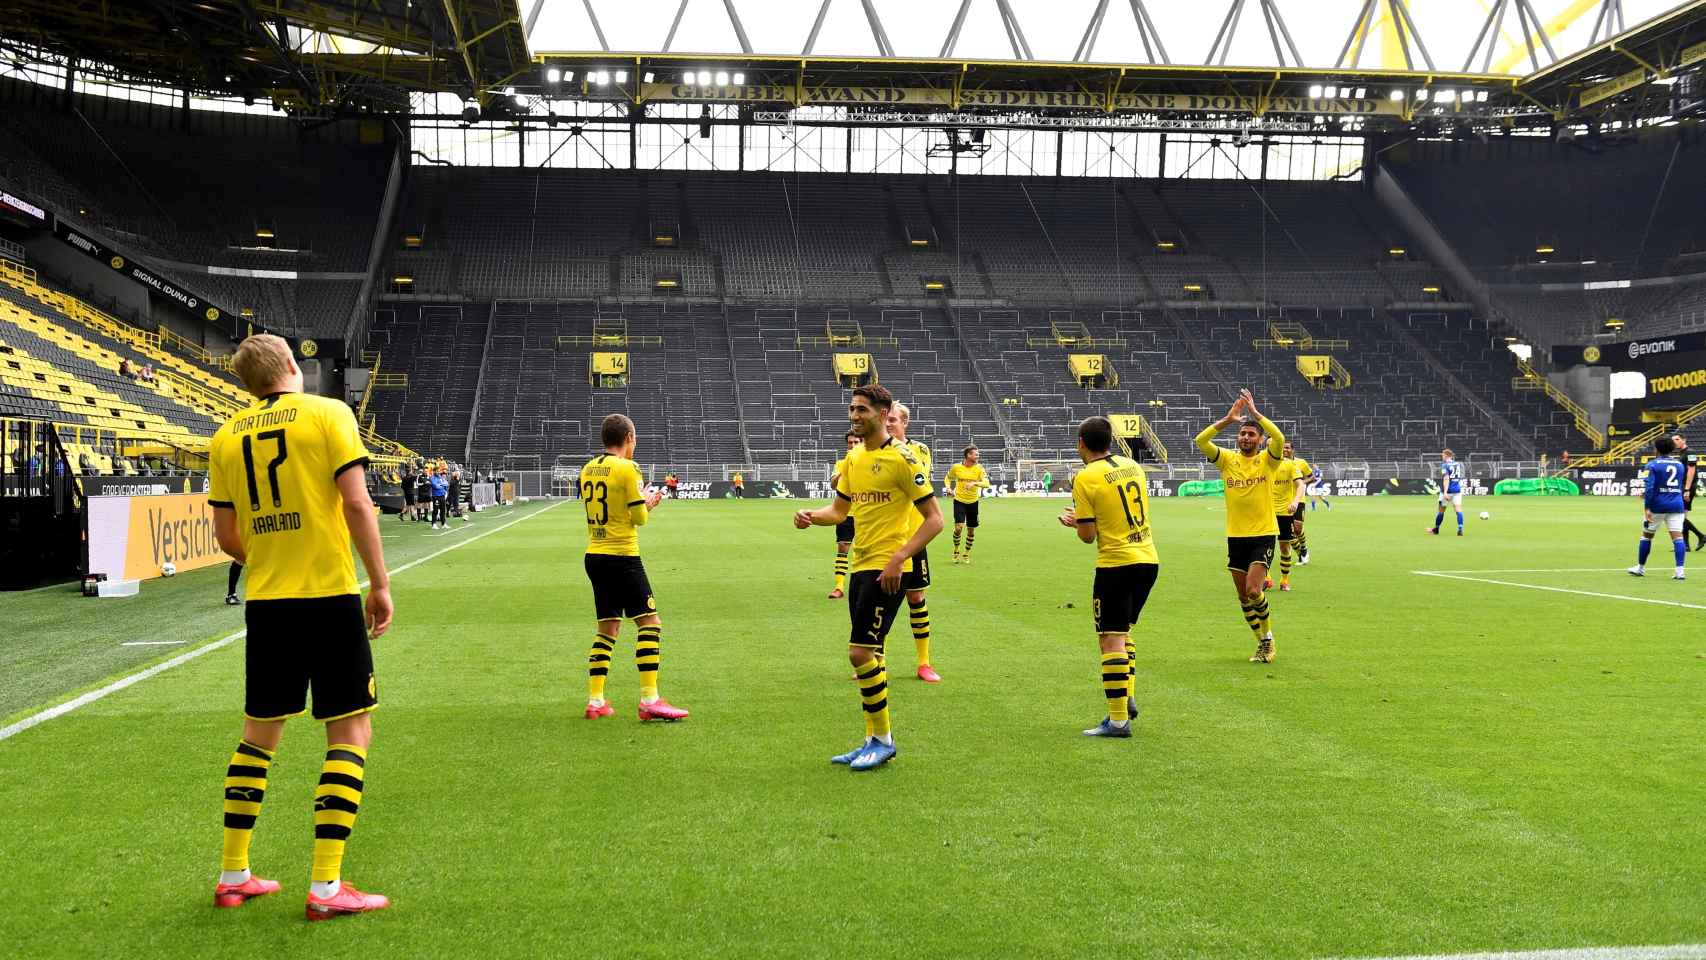 Haaland celebra su gol separado de sus compañeros del Borussia Dortmund